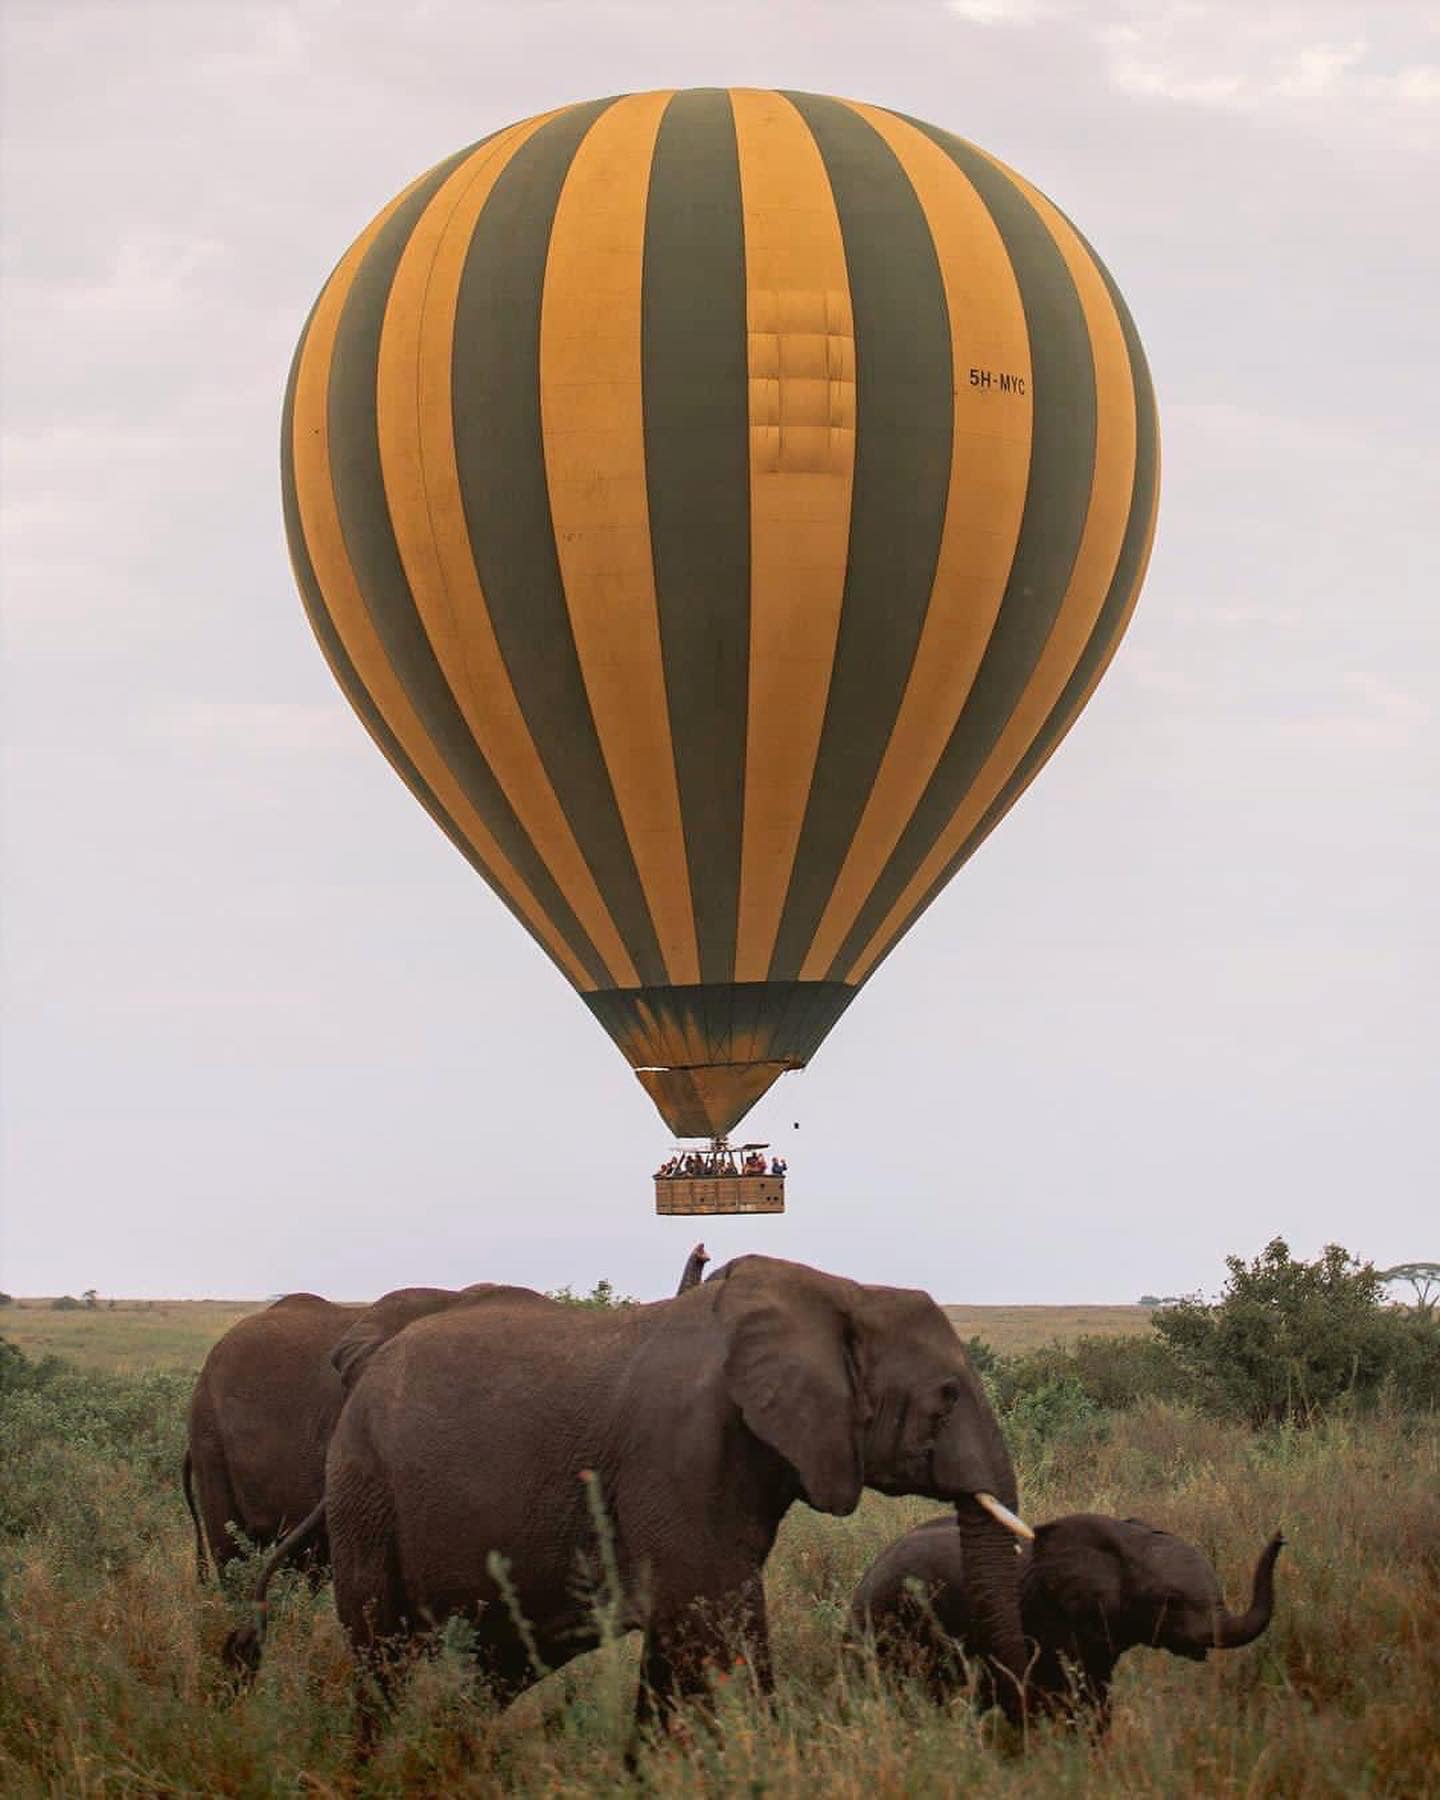 Serengeti National Park (full day)